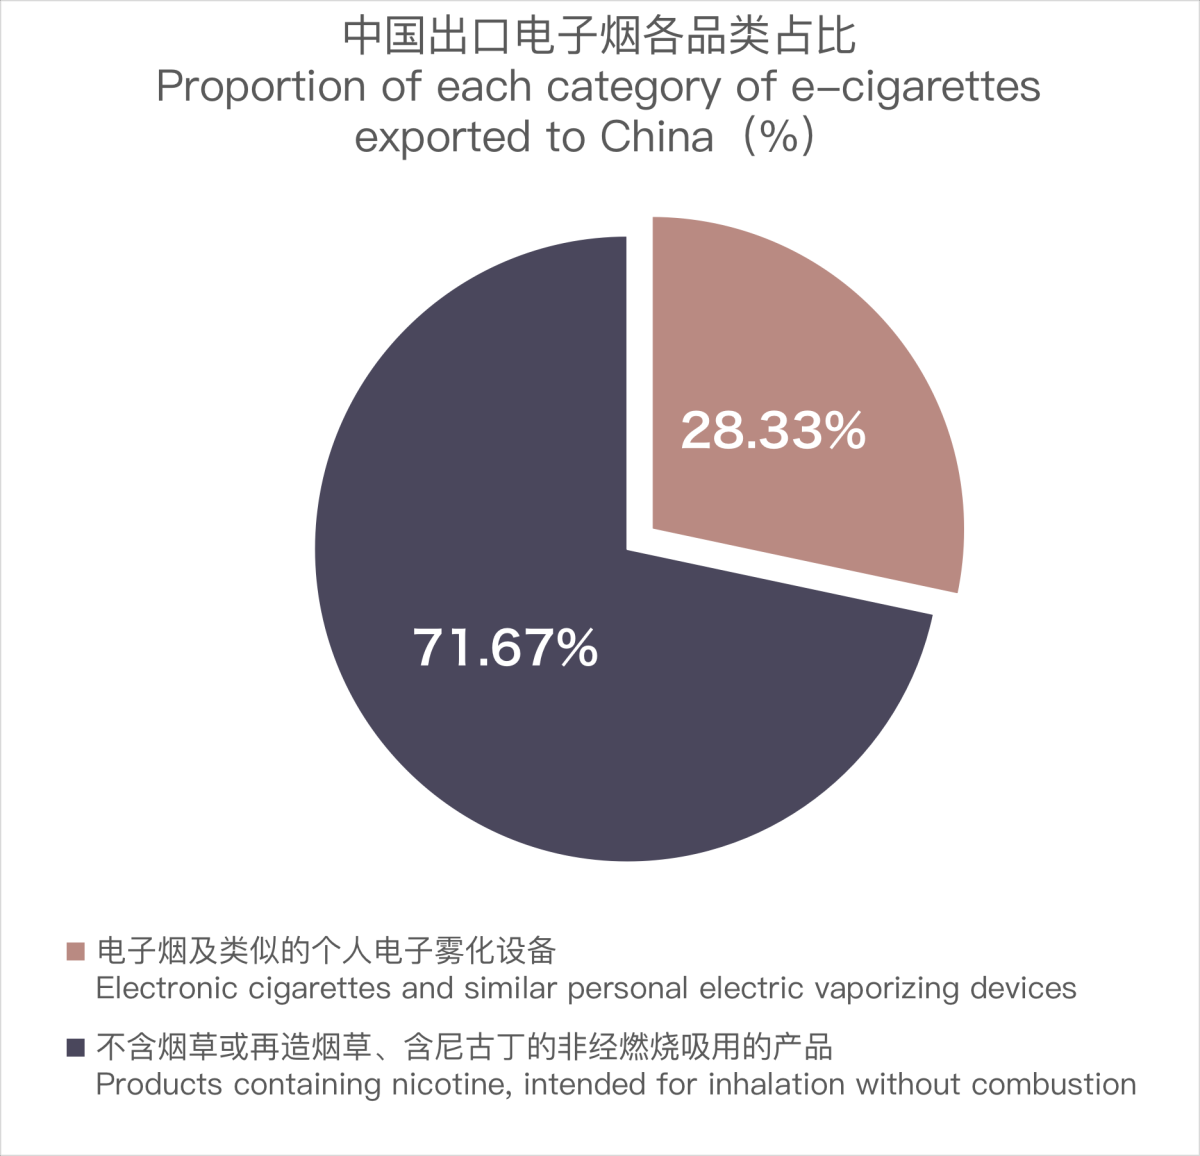 12月中国出口沙特阿拉伯电子烟约660万美元 环比增长78.13%